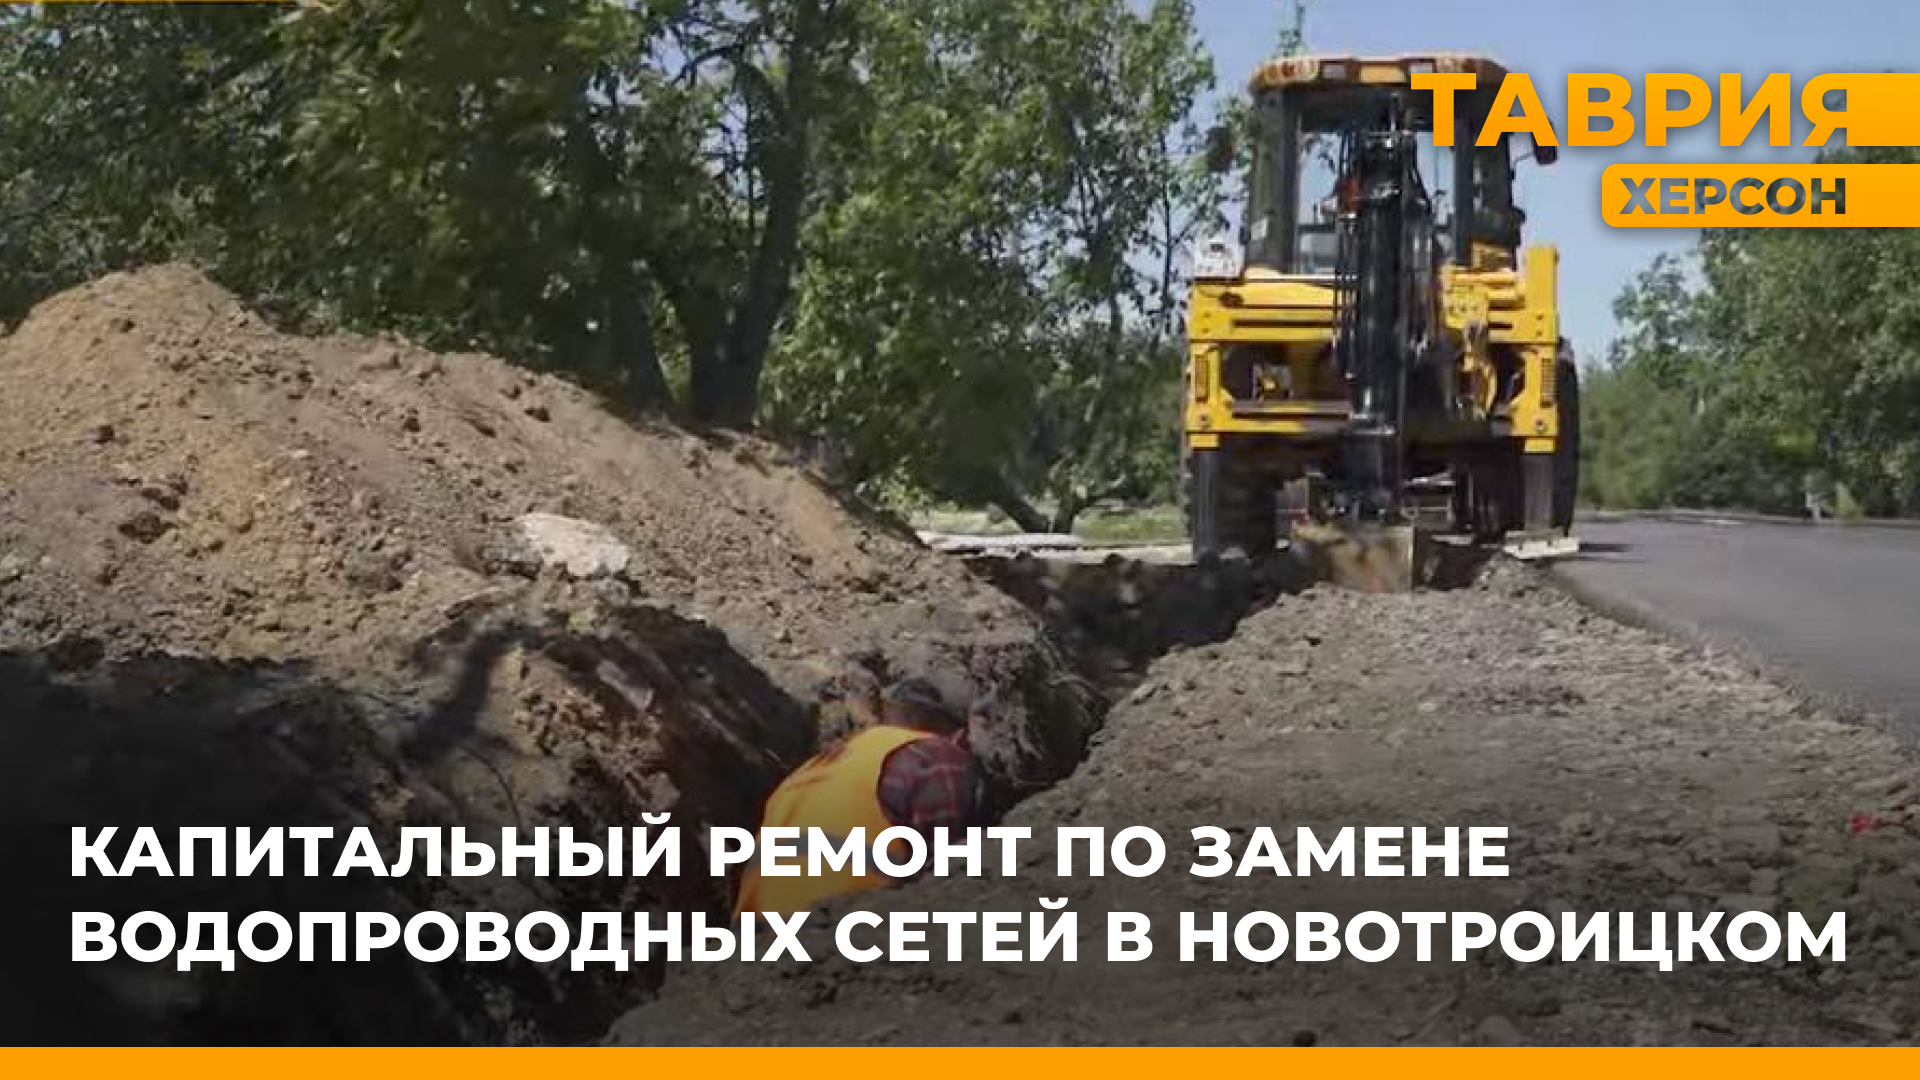 В Новотроицком проводится капитальный ремонт системы водоснабжения